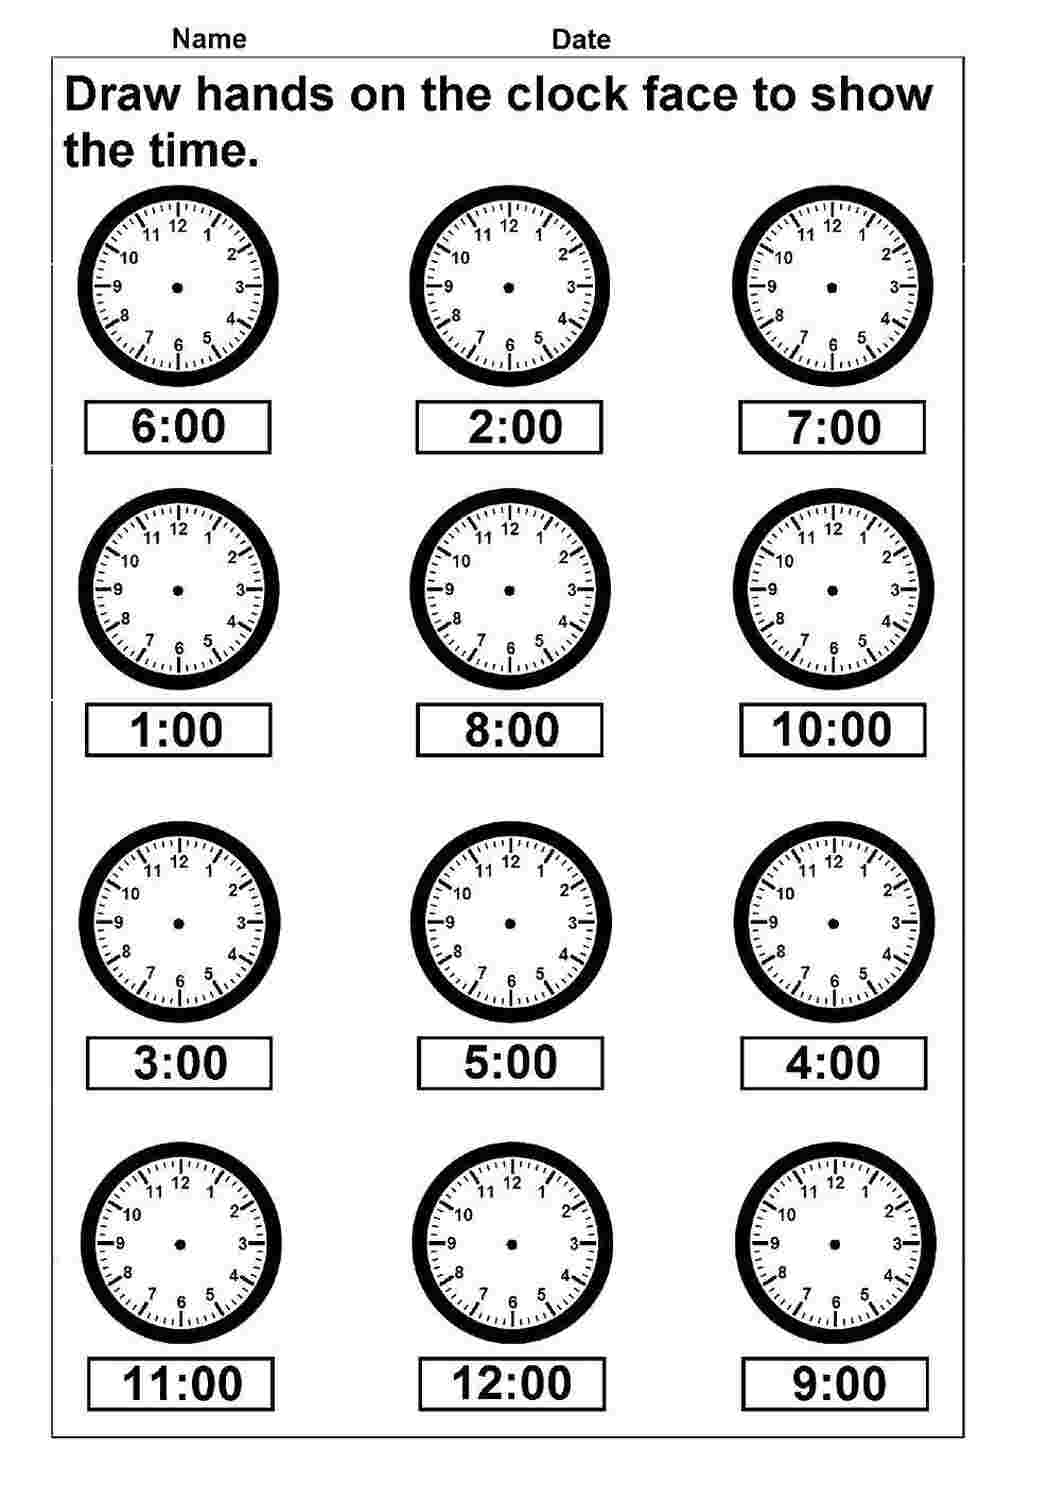 Раскраски Учимся определять время по стрелочным часам. Задачи про стрелочные часы раннее развитие ребенка. задания про время